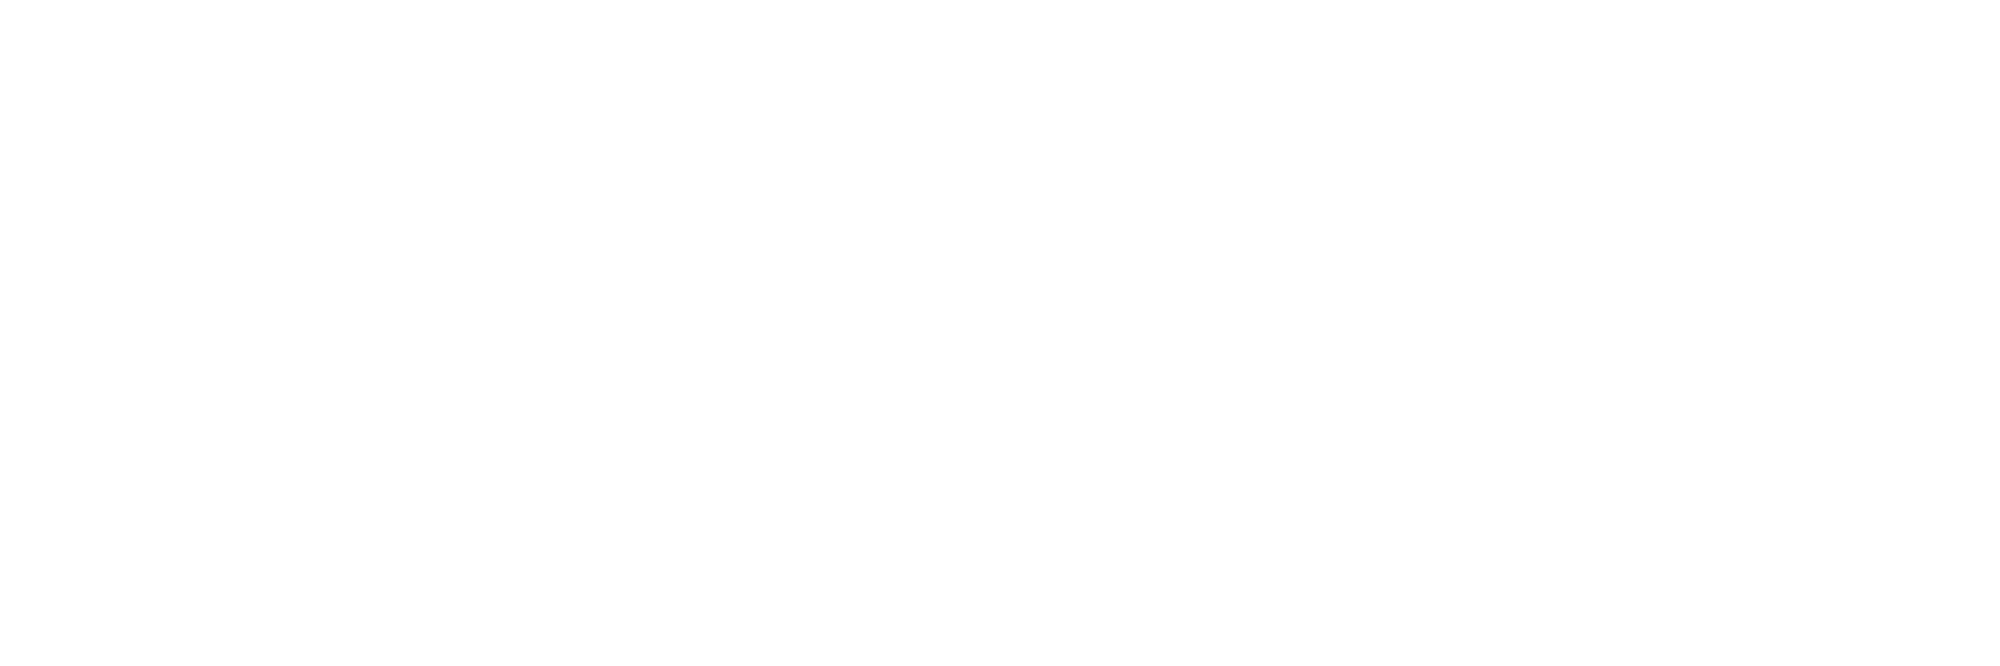 vip experiences